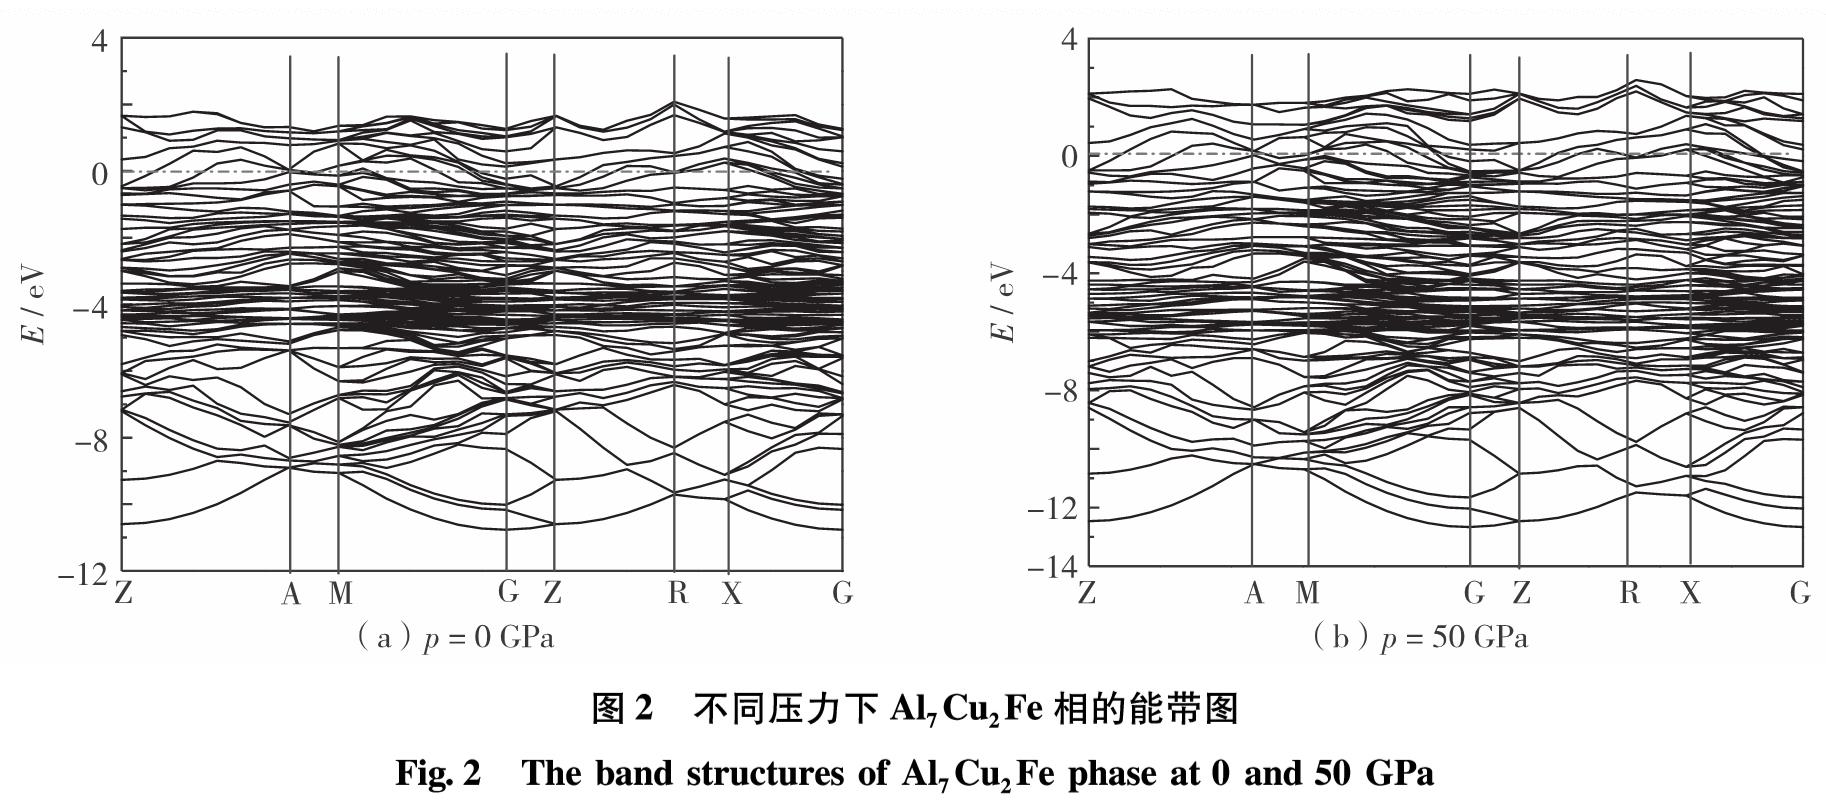 图2 不同压力下Al7Cu2Fe相的能带图<br/>Fig.2 The band structures of Al7Cu2Fe phase at 0 and 50 GPa